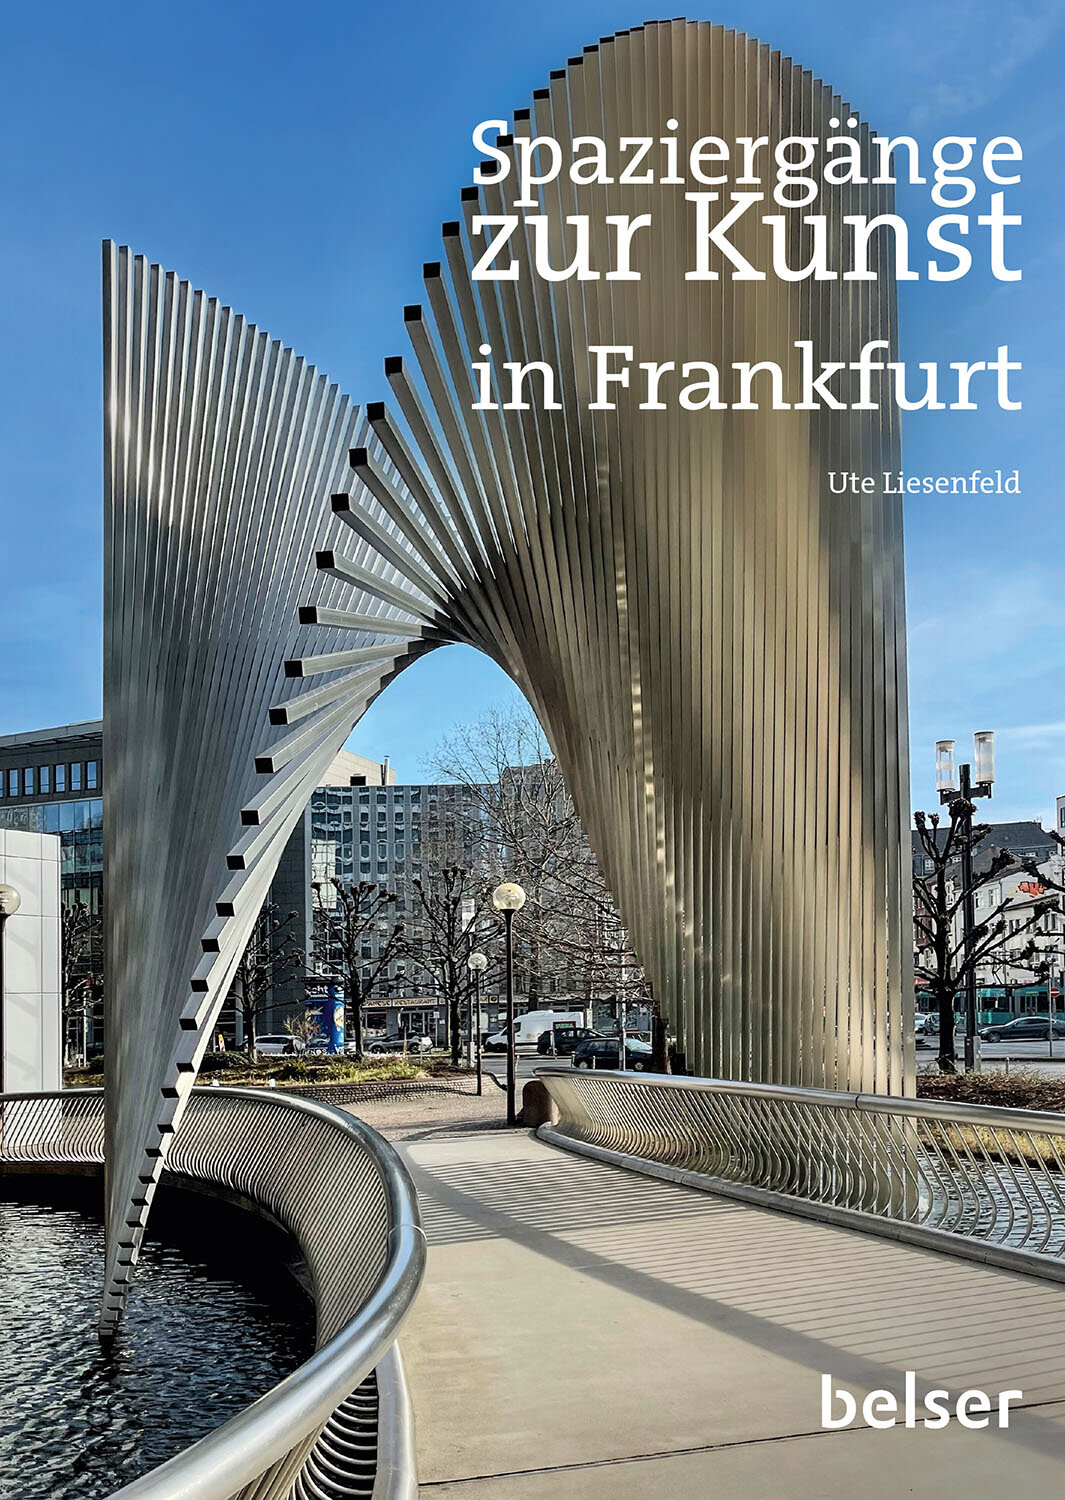 Spaziergänge zur Kunst in Frankfurt am Main